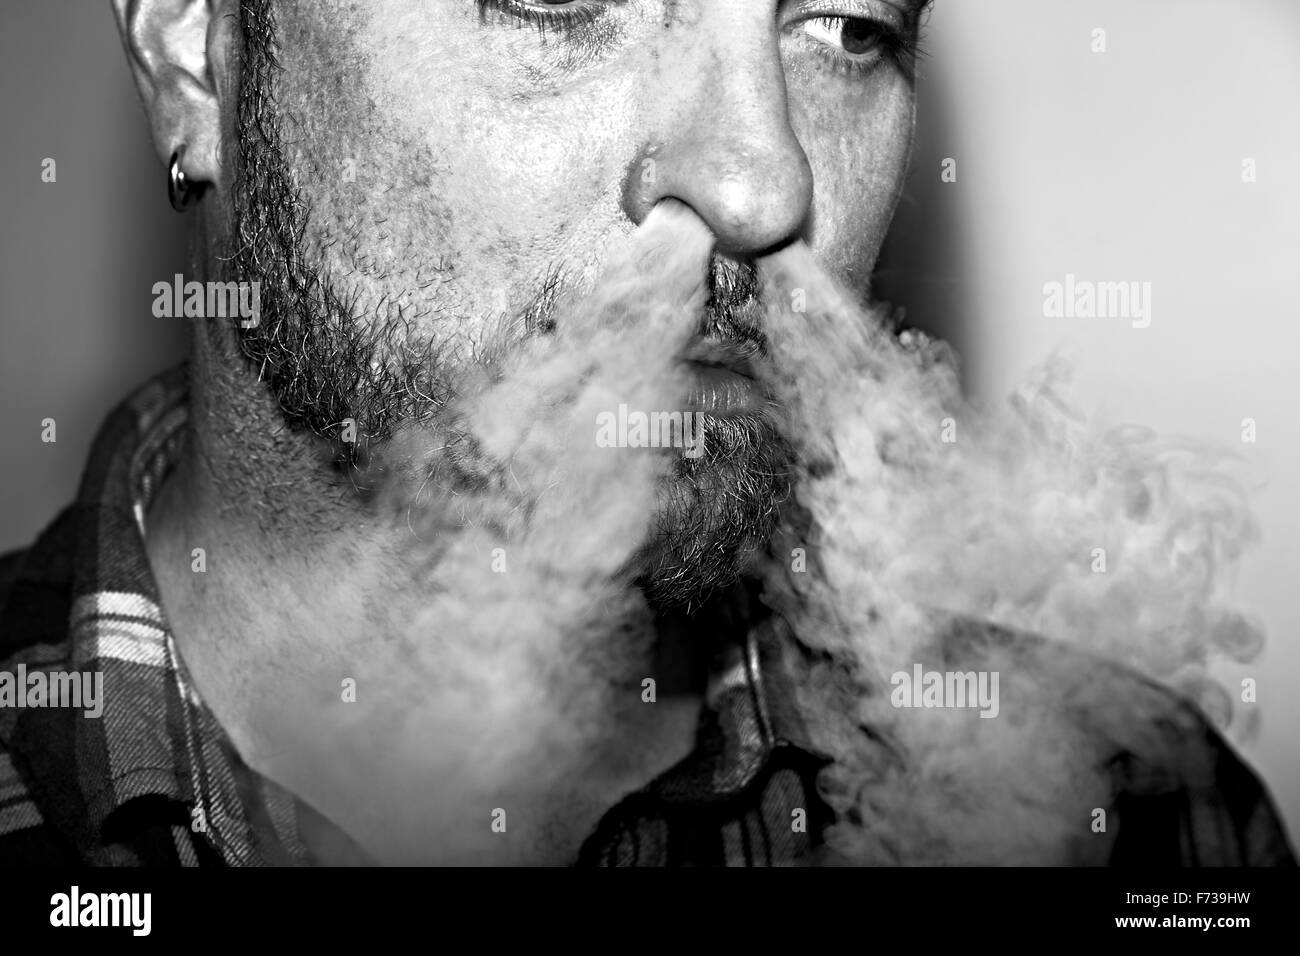 Man blowing vapeur provenant d'un e-cigarette dans ses narines. Banque D'Images